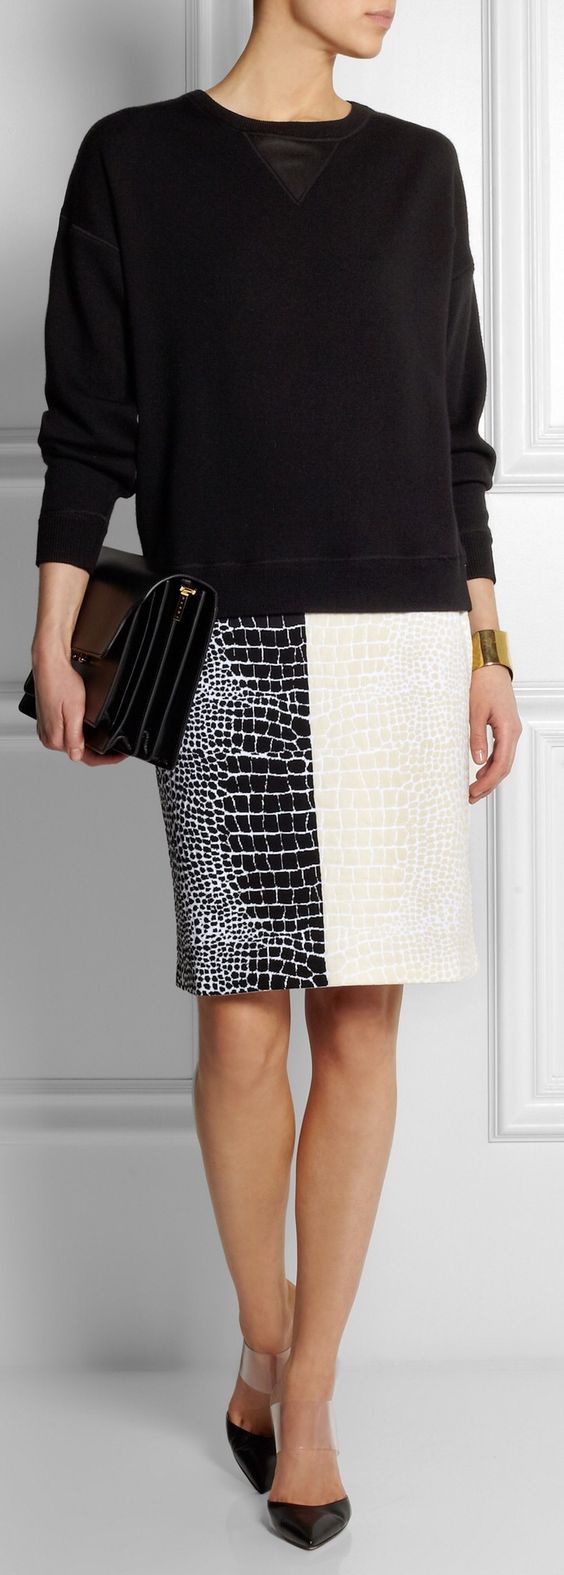 Black and white snakeskin skirt